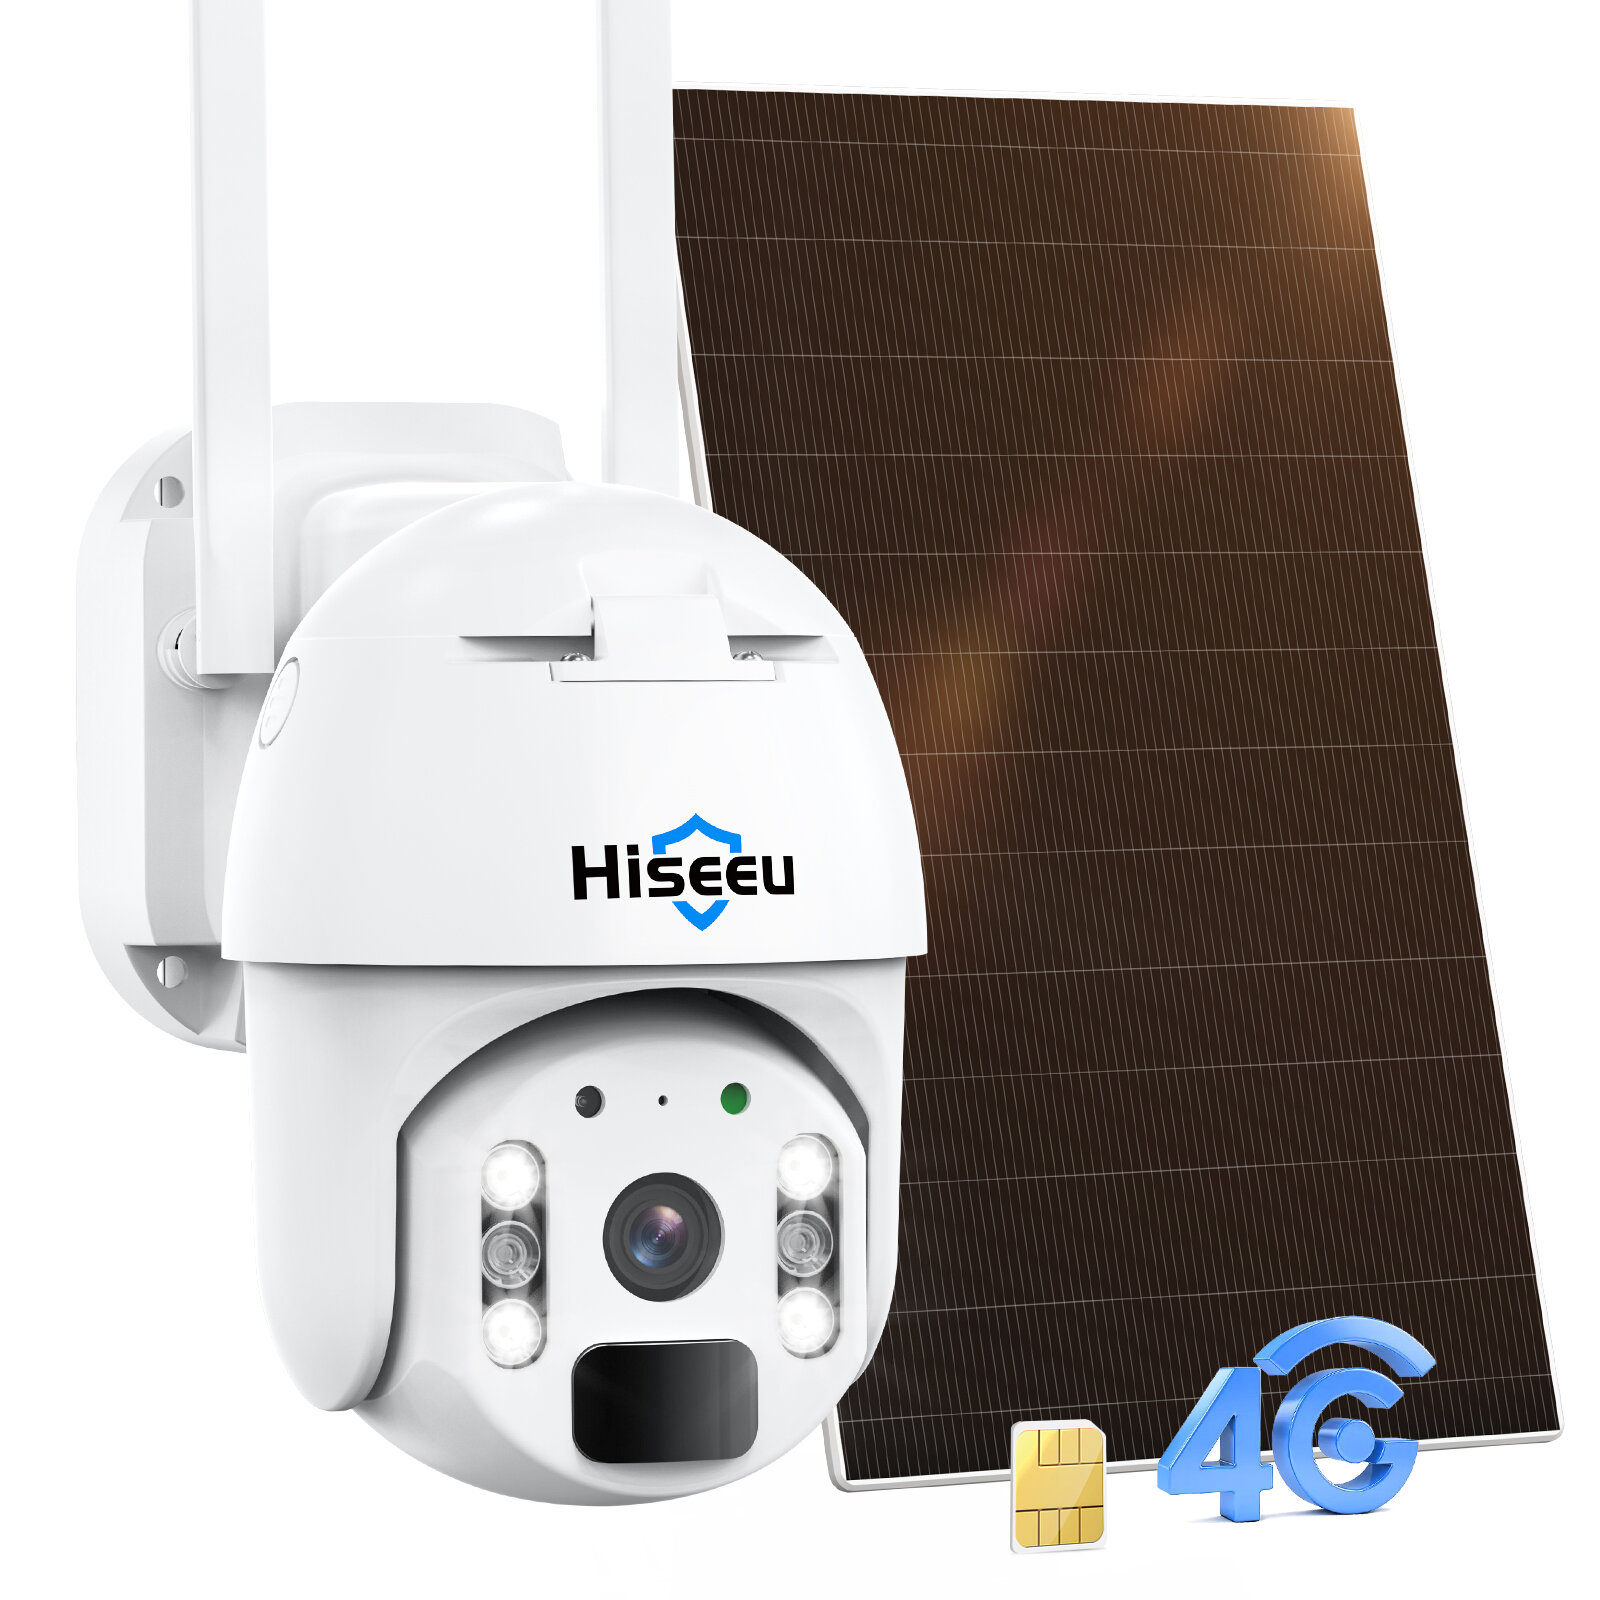 Hiseeu Drahtlose 4G LTE Mobilfunk-Überwachungskamera KEIN WIFI PTZ Farbnachtsicht 2-Wege-Audio PIR Erkennung IP66 Wasser